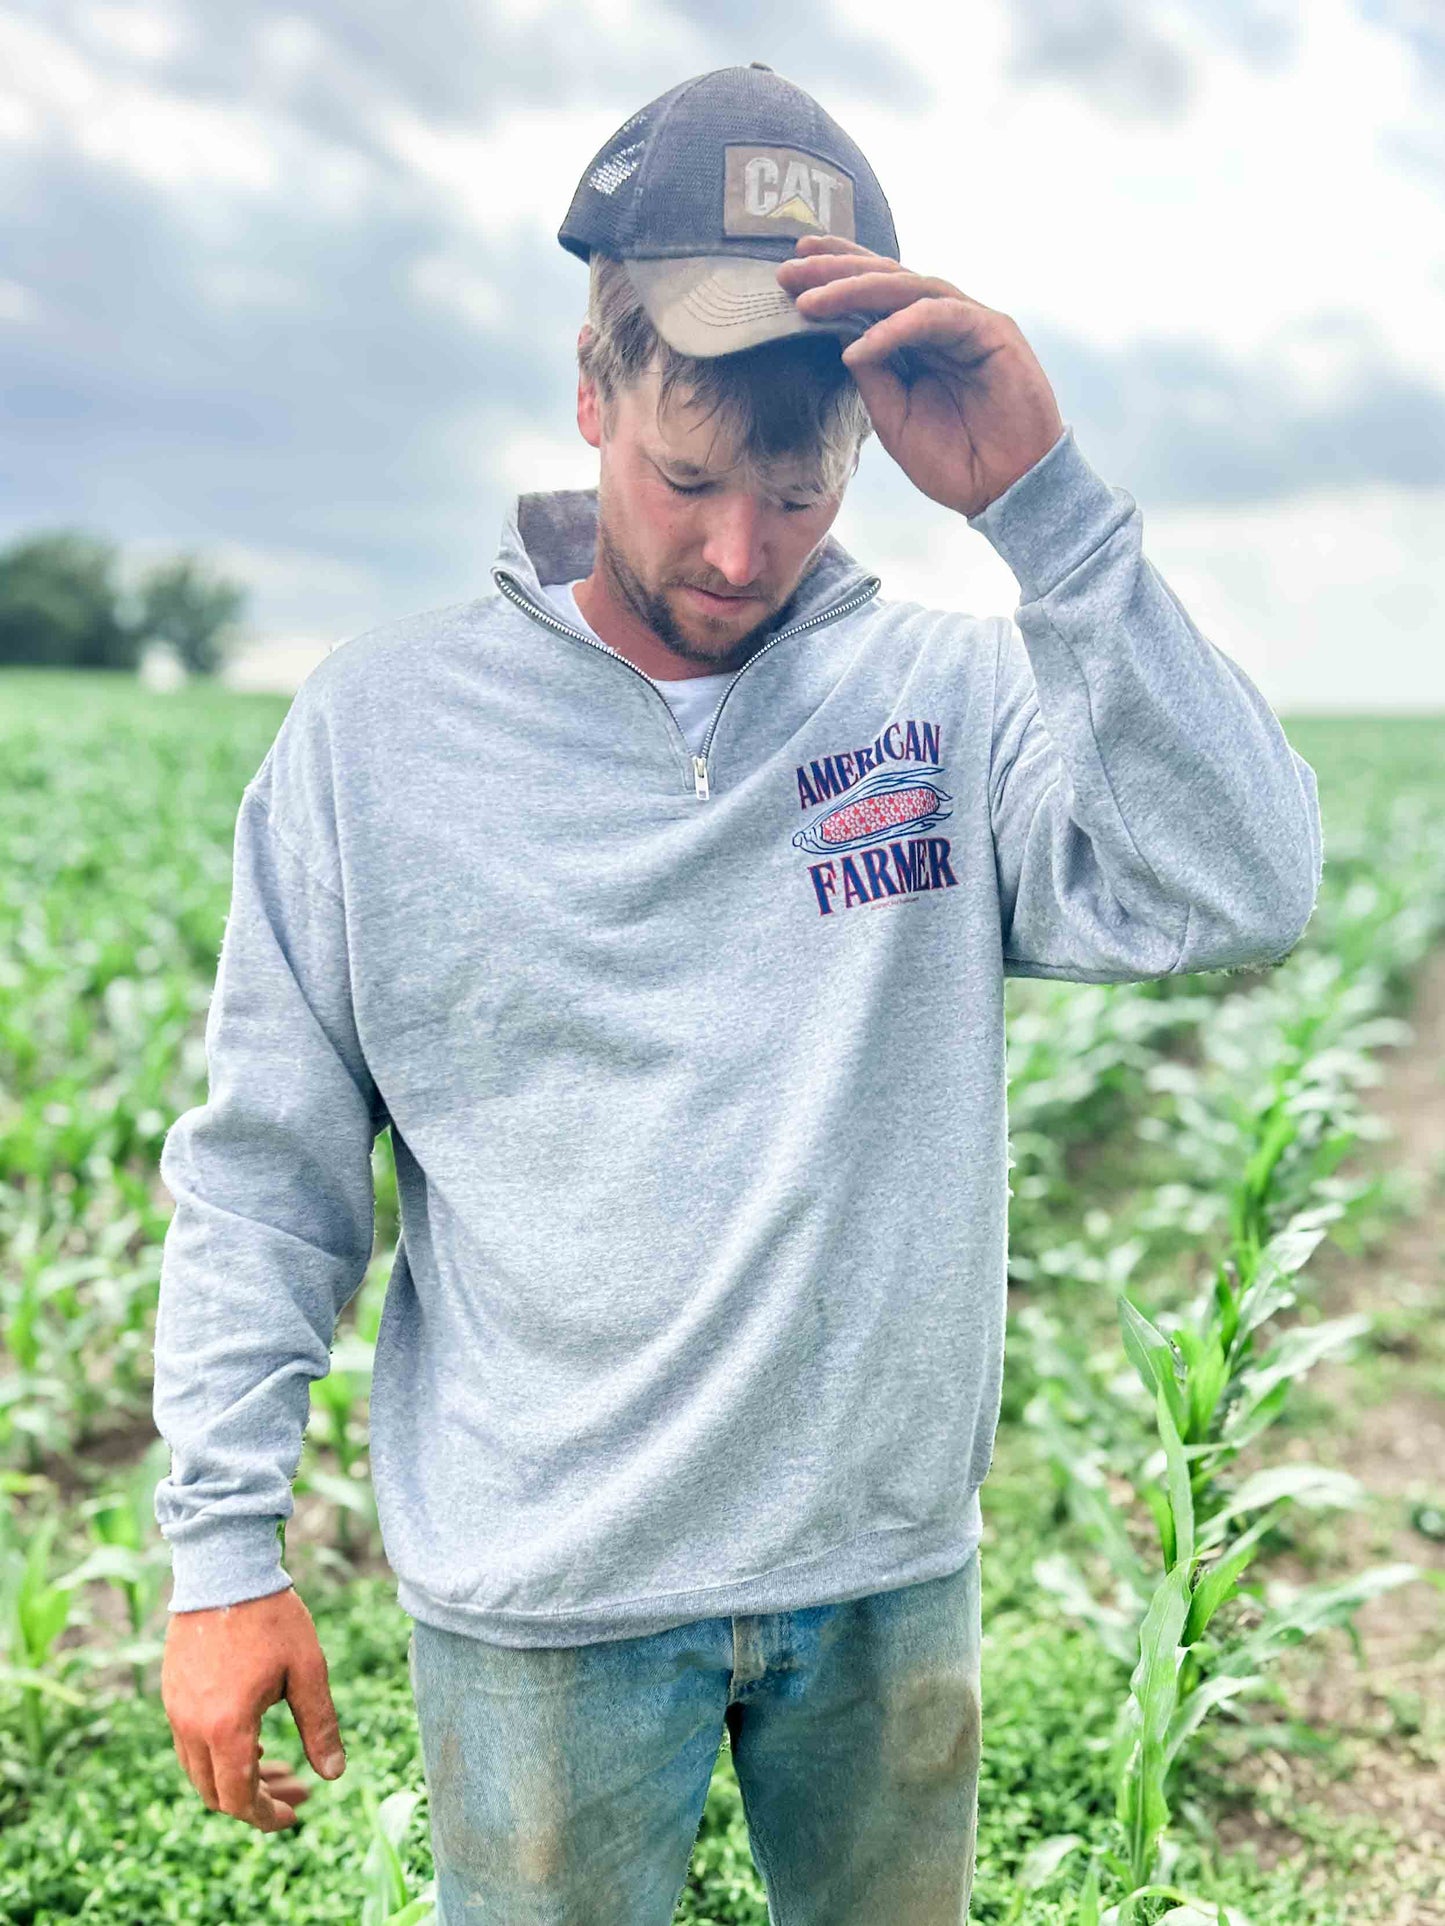 ‘American Farmer’ Corn 1/4 Zip